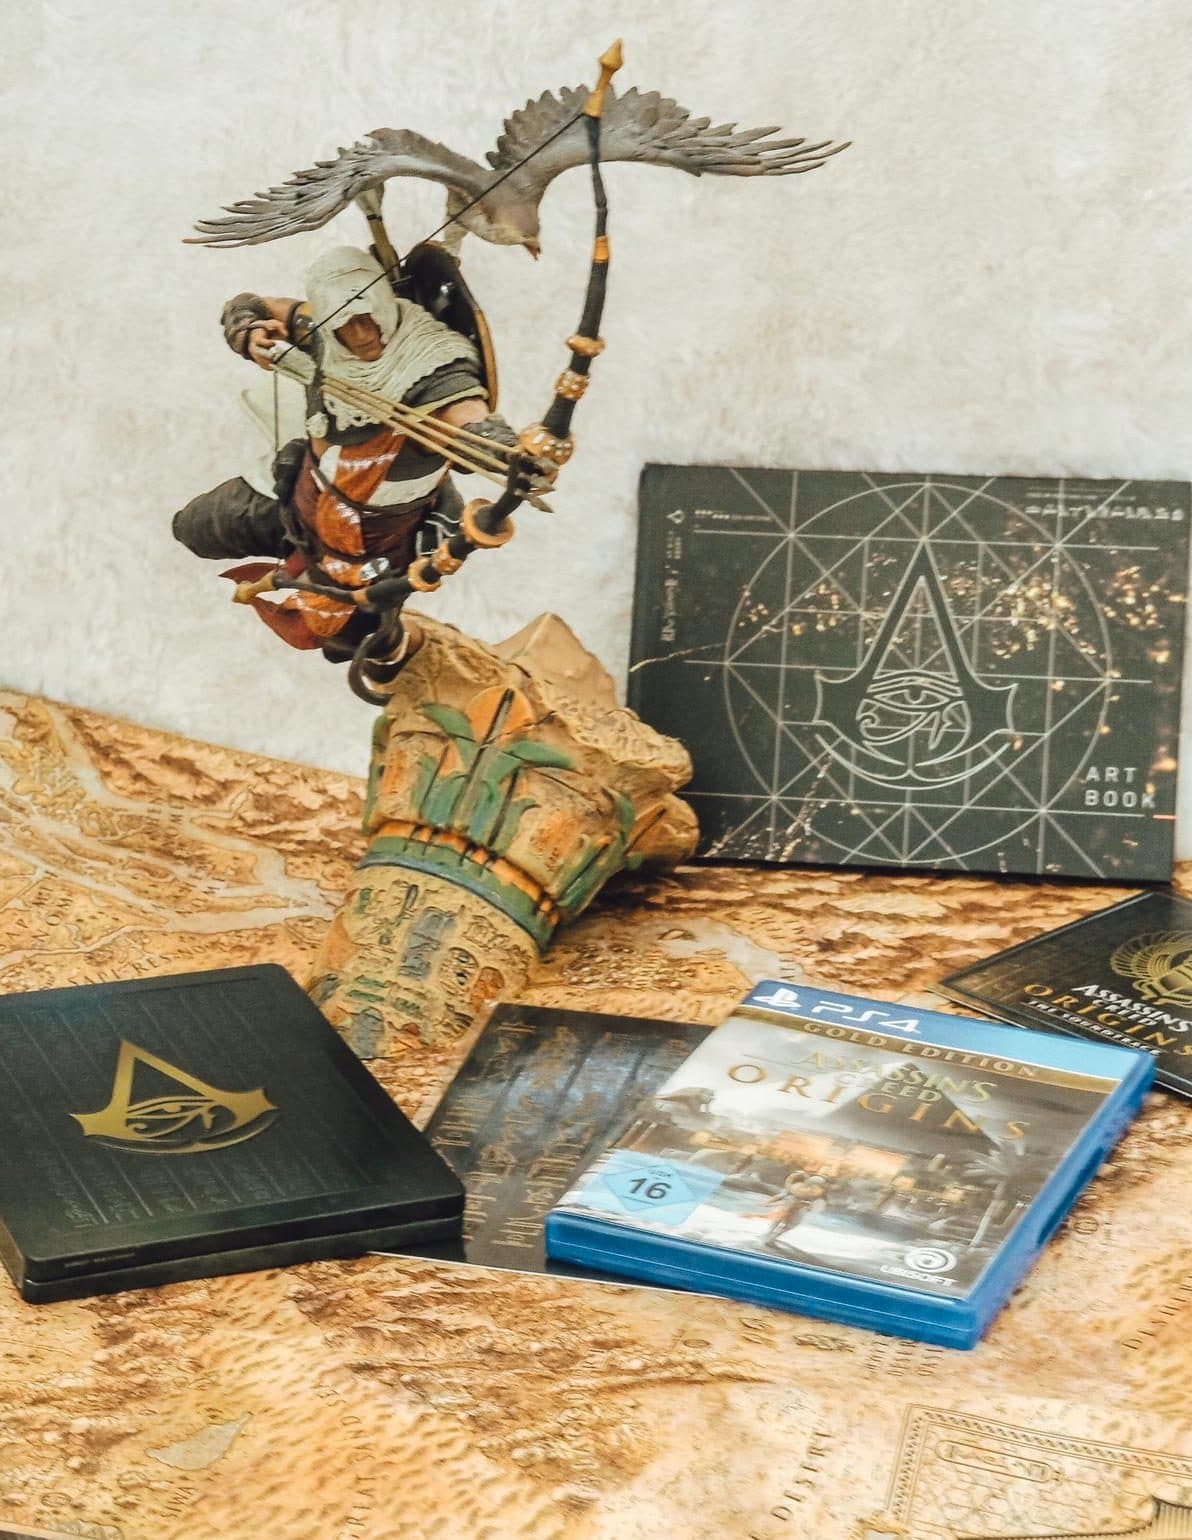 Die Assasins Creed - Dawn of the Creed Collector’s Edition war exklusiv im Ubisoft Store erhältlich & erschien am 27.10.201. Mehr dazu auf dem Gamer Blog ☆